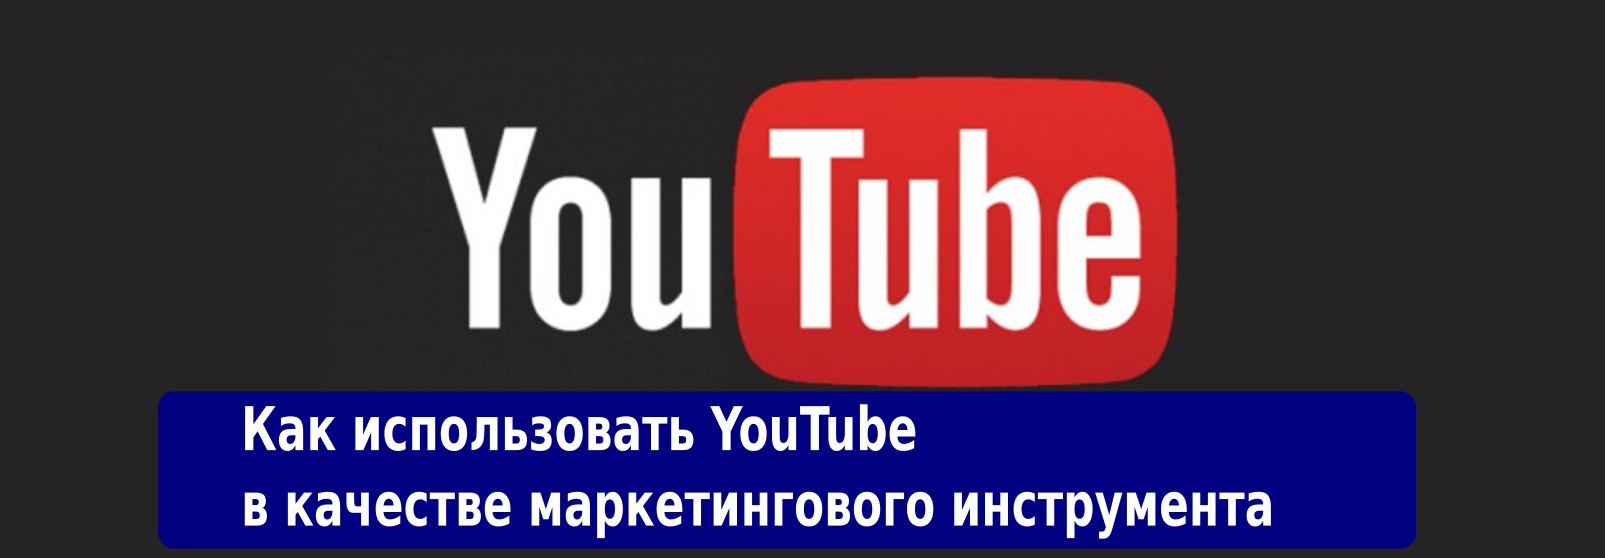 Kak_ispolzovat_YouTube_v_kachestve_marketingovogo_instrumenta